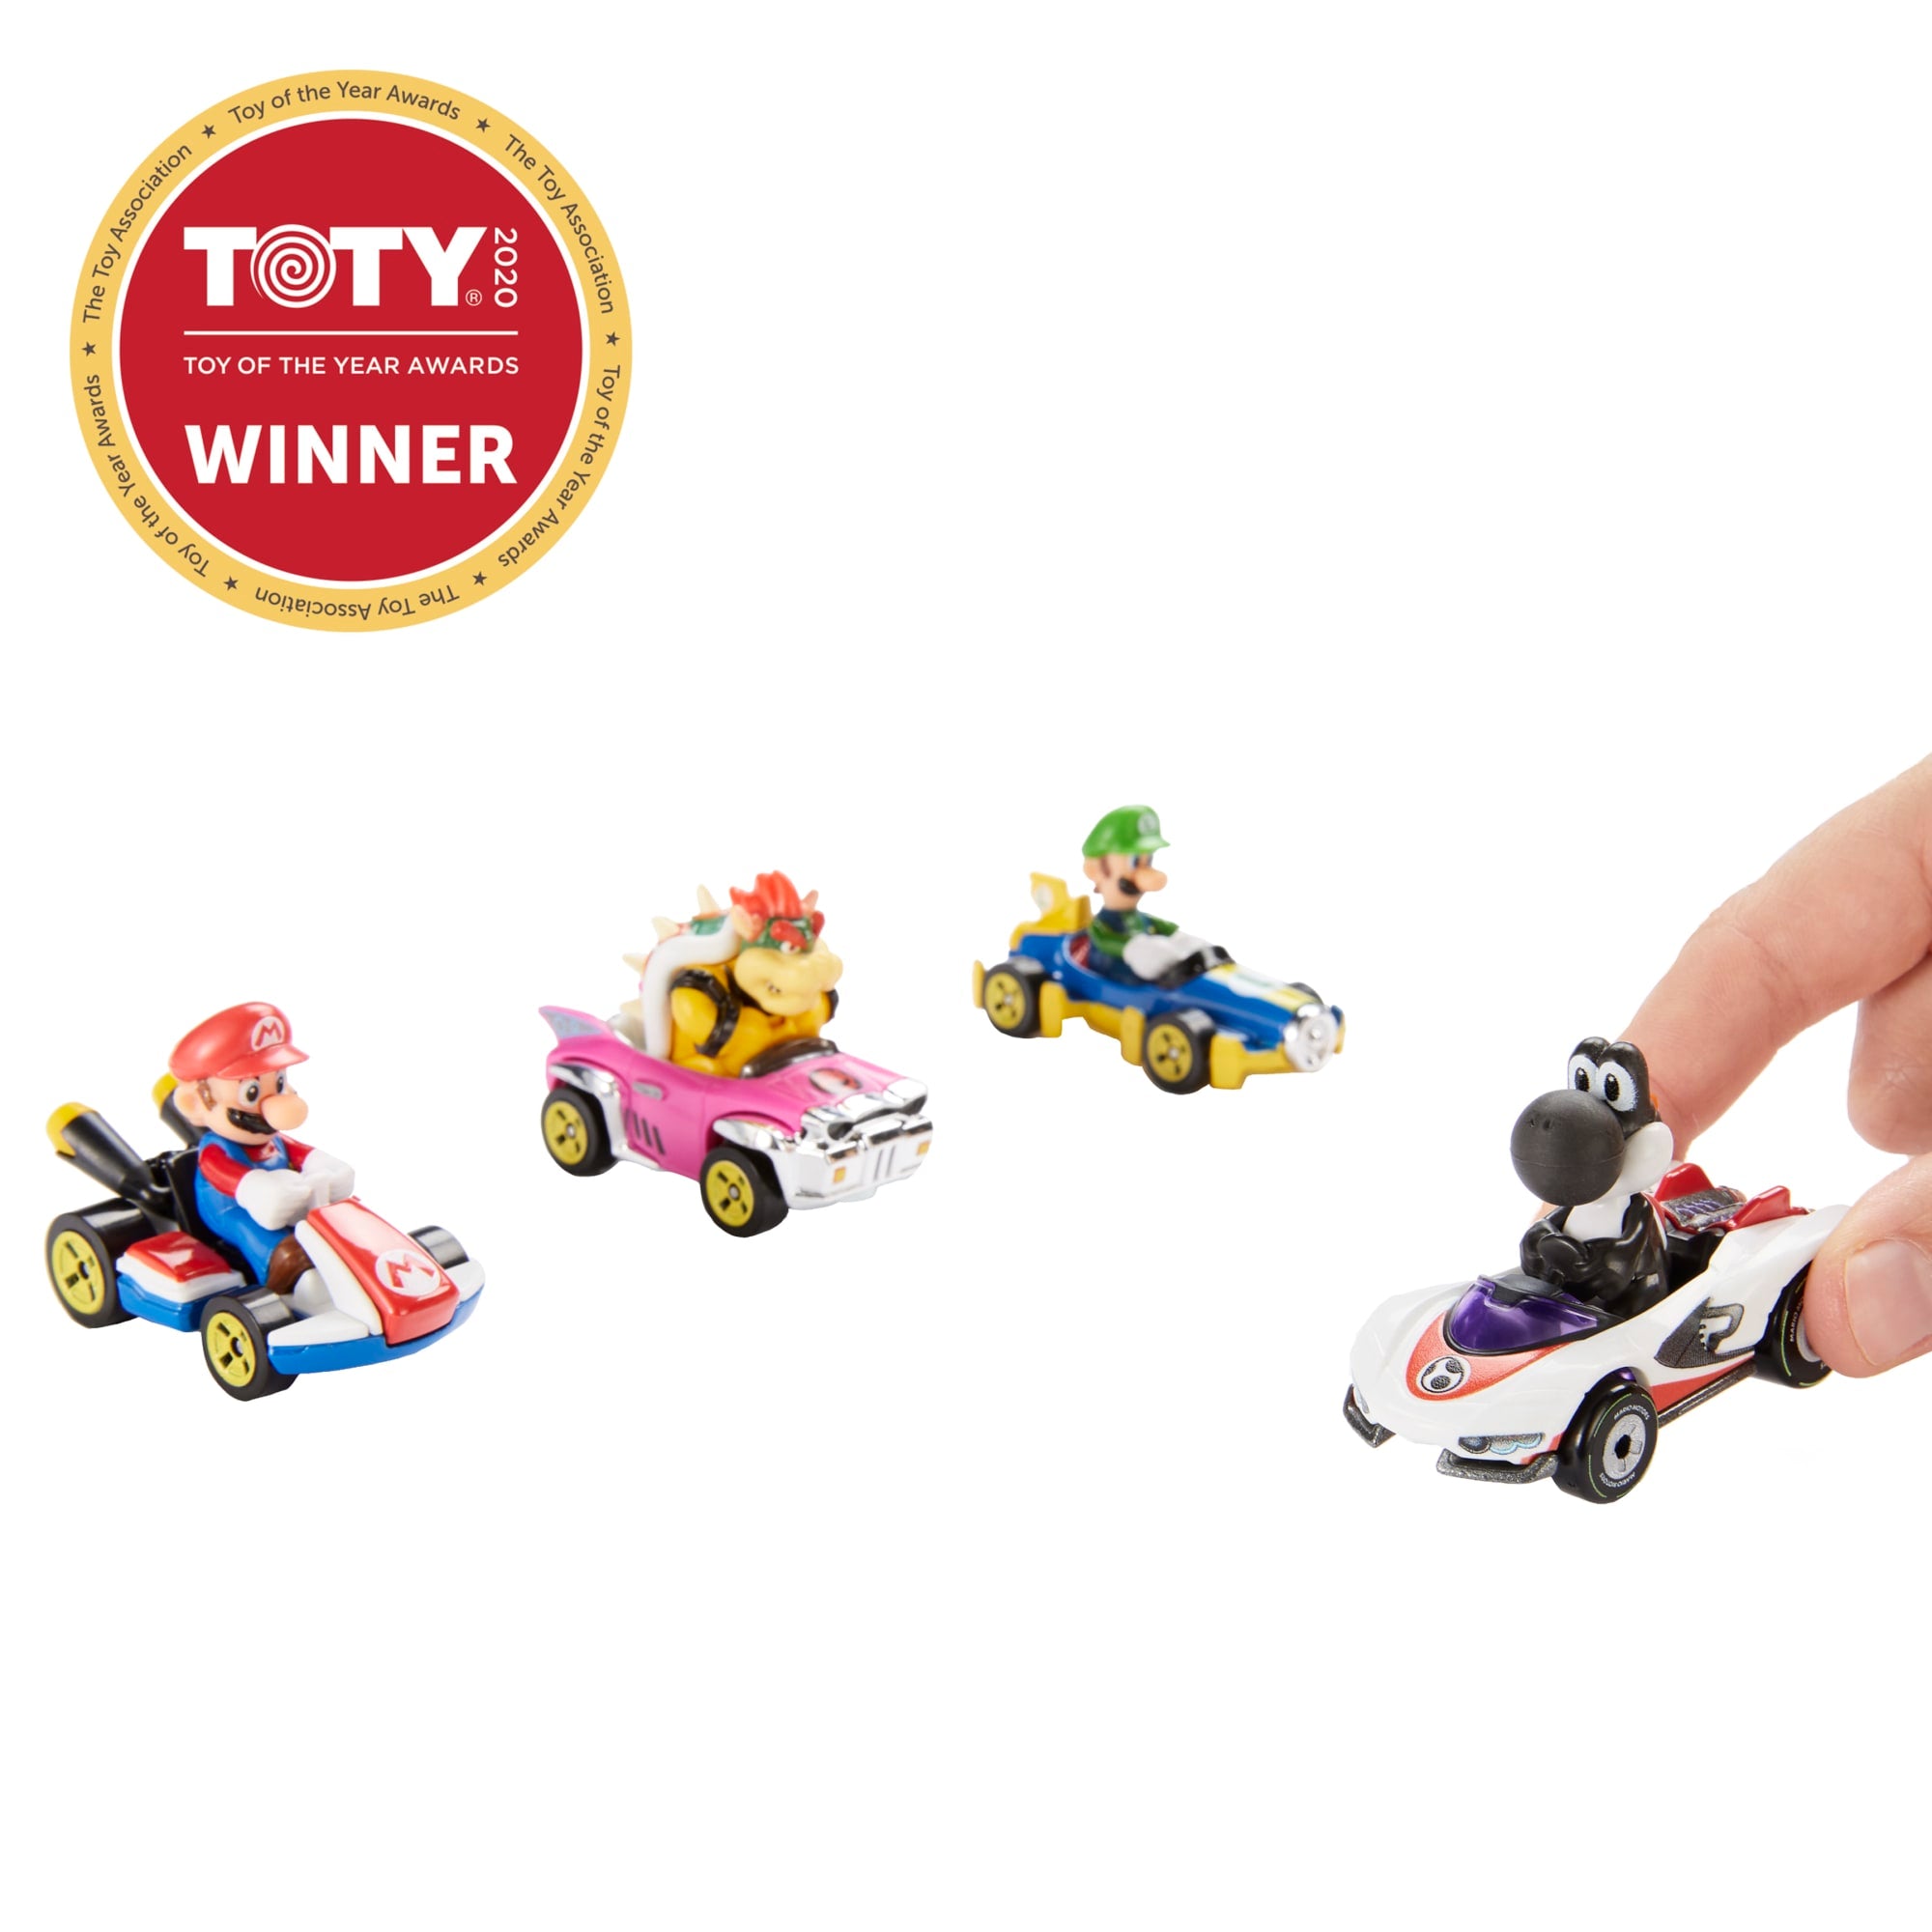 Hot Wheels Mario Kart Bundle | Mattel